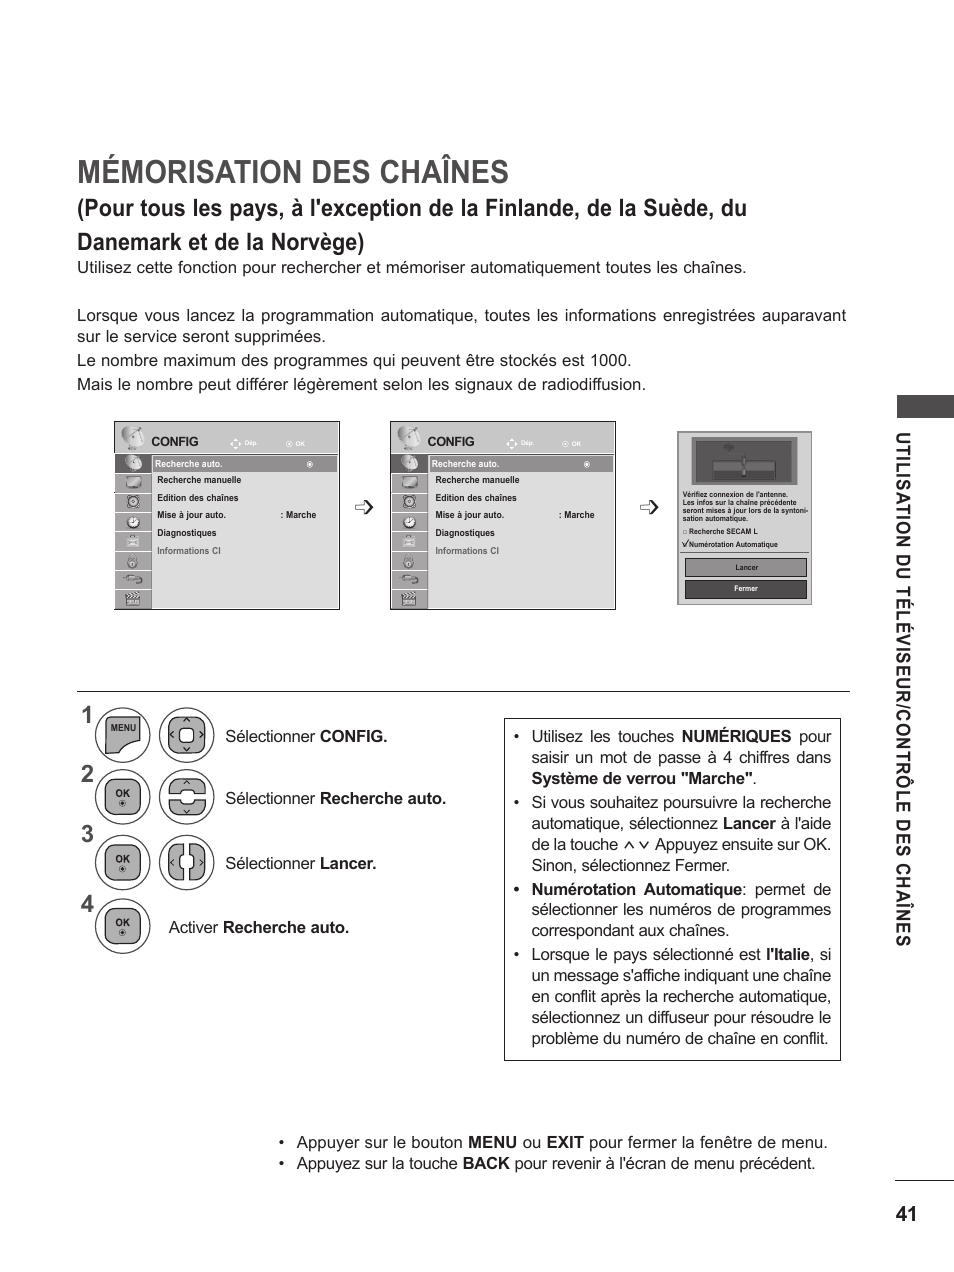 Mémorisation des chaînes | LG M2262D-PC Manuel d'utilisation | Page 41 / 154